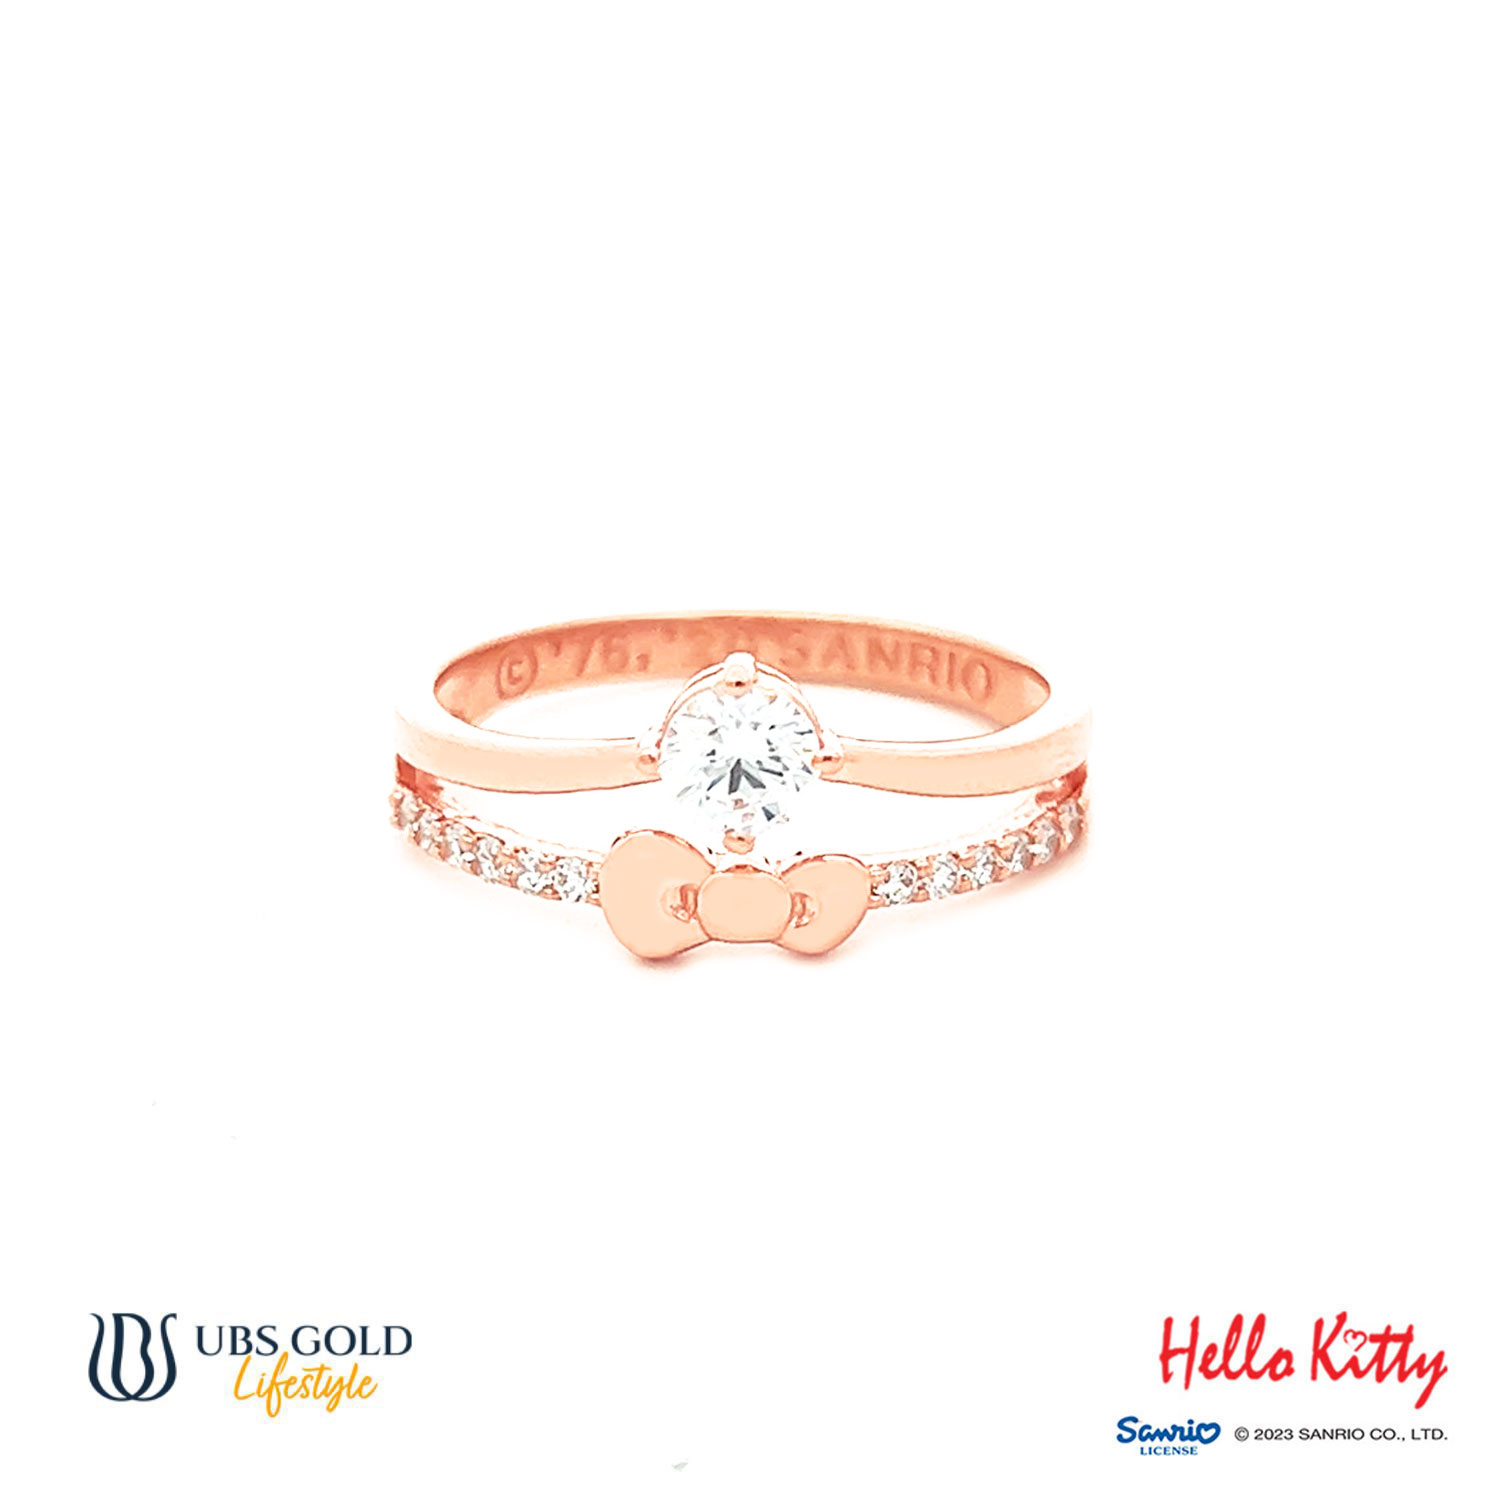 UBS Gold Cincin Emas Sanrio Hello Kitty - Ccz0021 - 17K